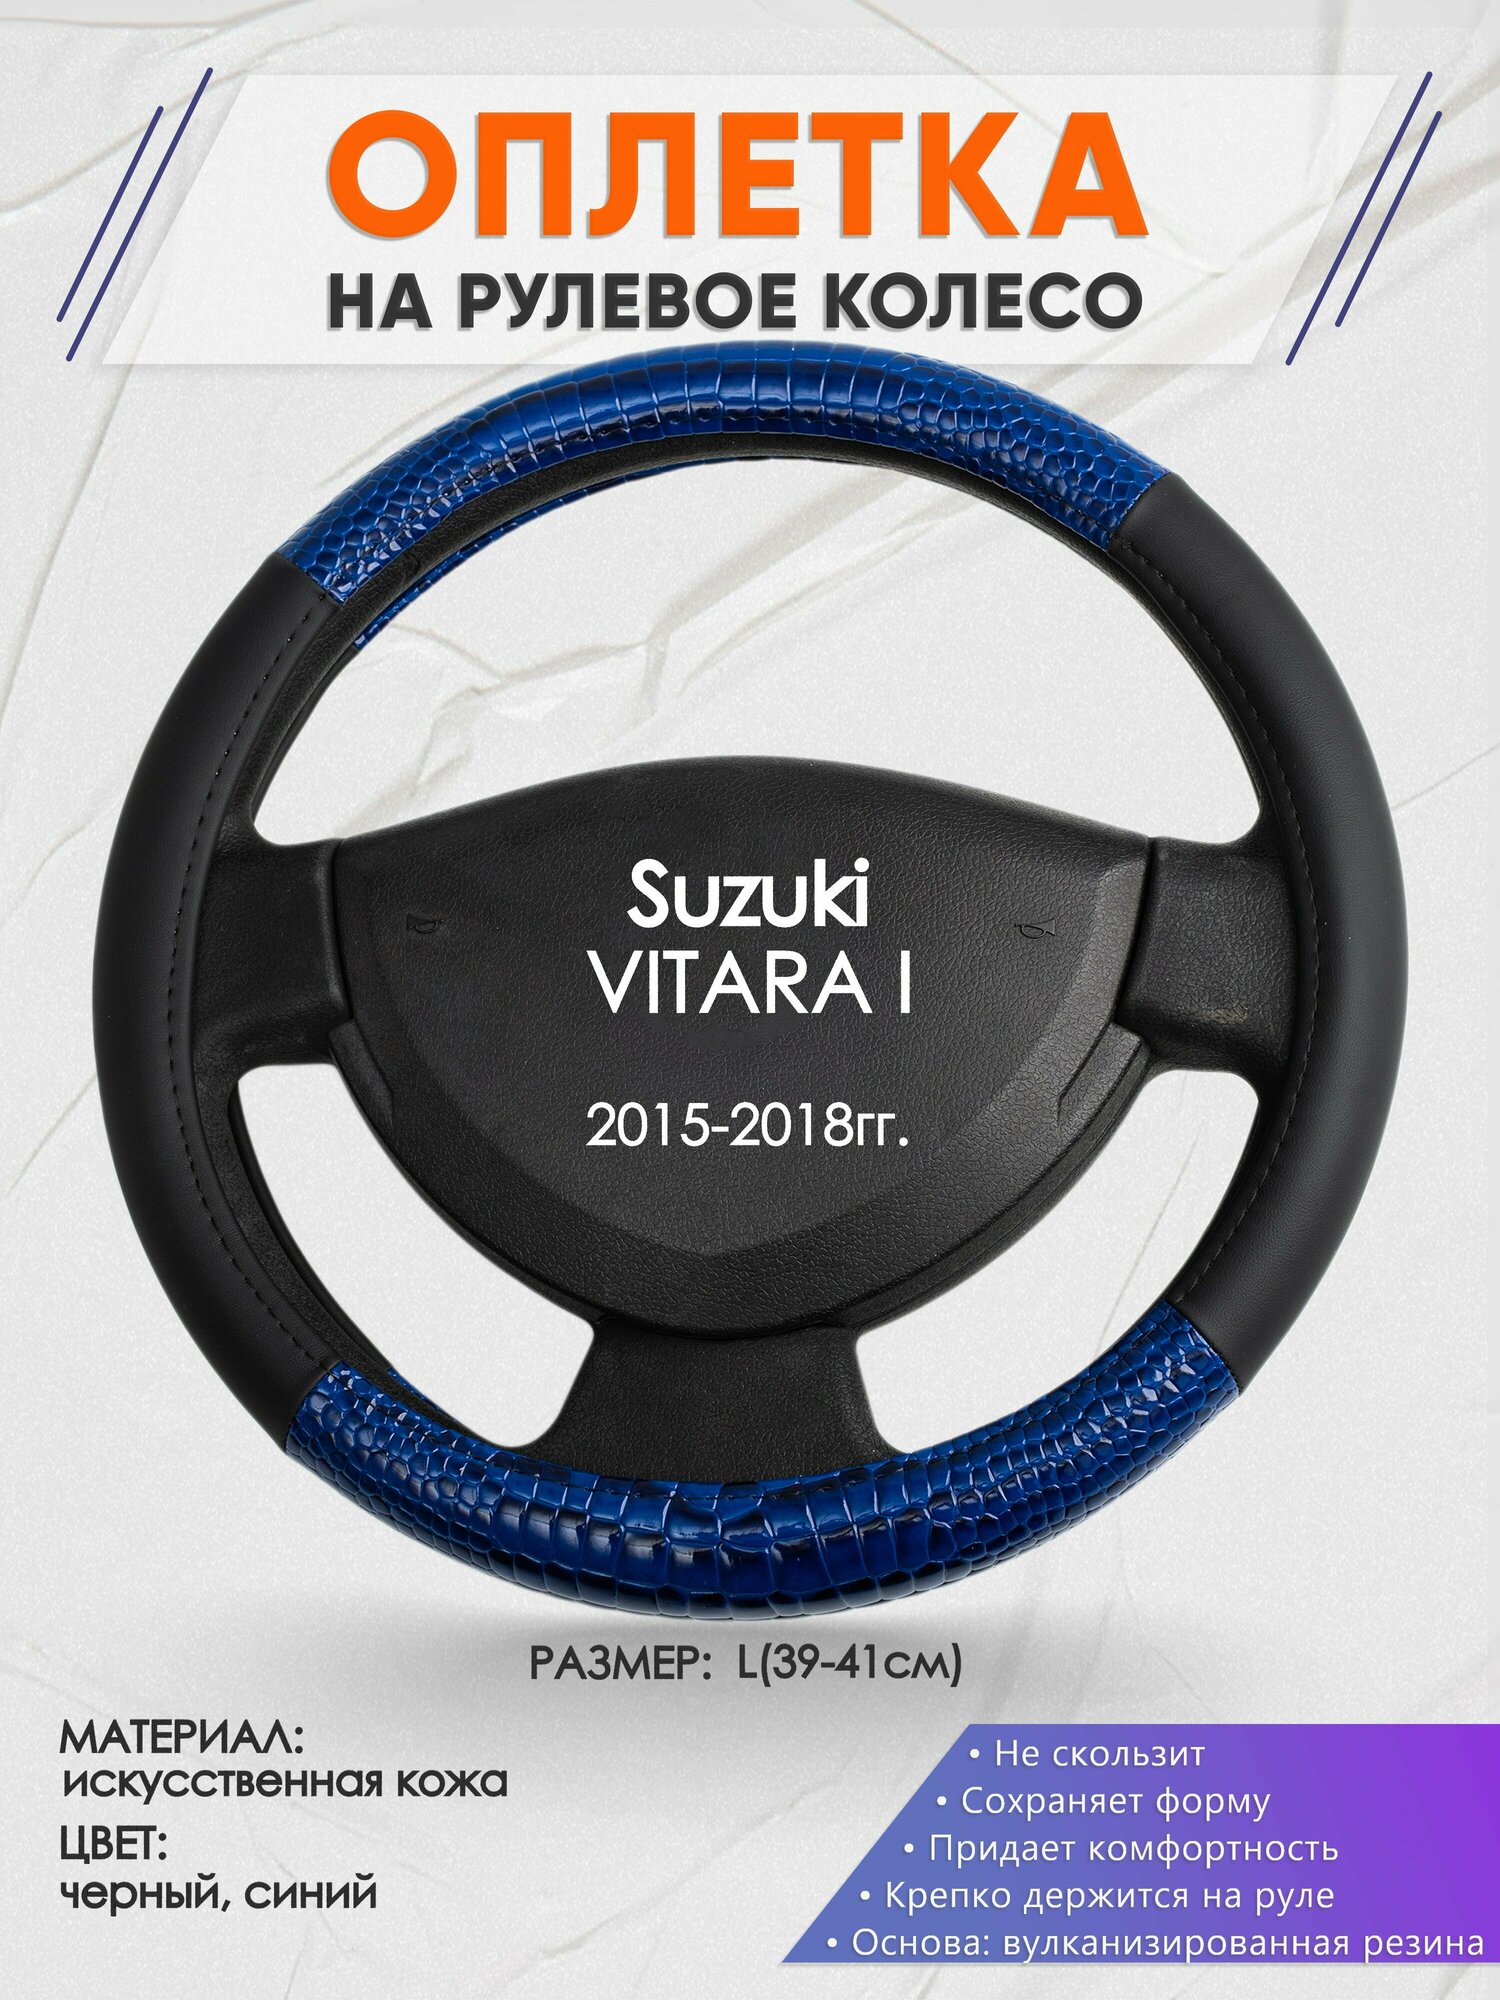 Оплетка на руль для Suzuki VITARA I(Сузуки Витара 1) 2015-2018, L(39-41см), Искусственная кожа 82